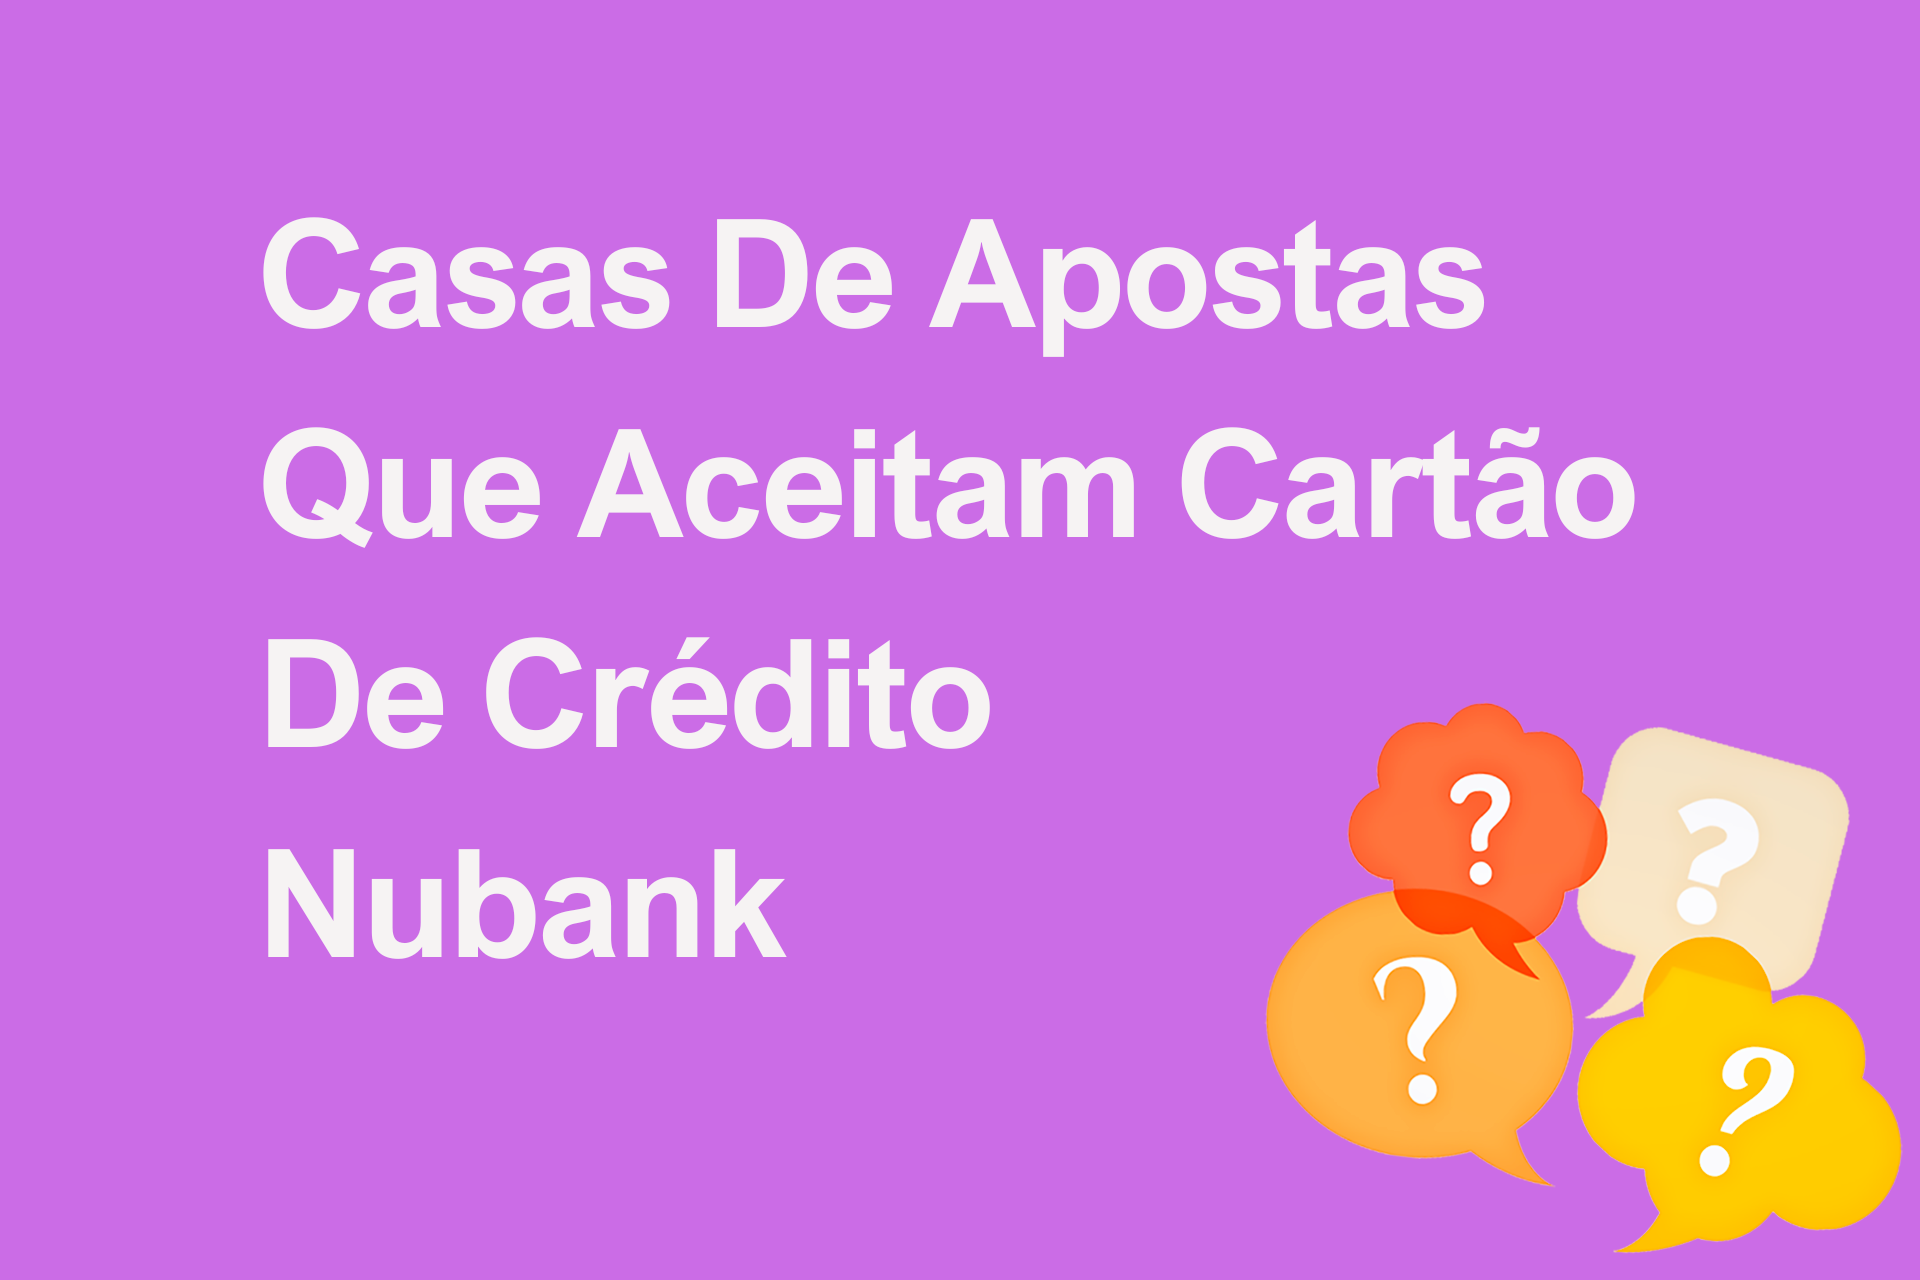 Casas de Apostas Que Aceitam Cartão de Crédito Nubank?